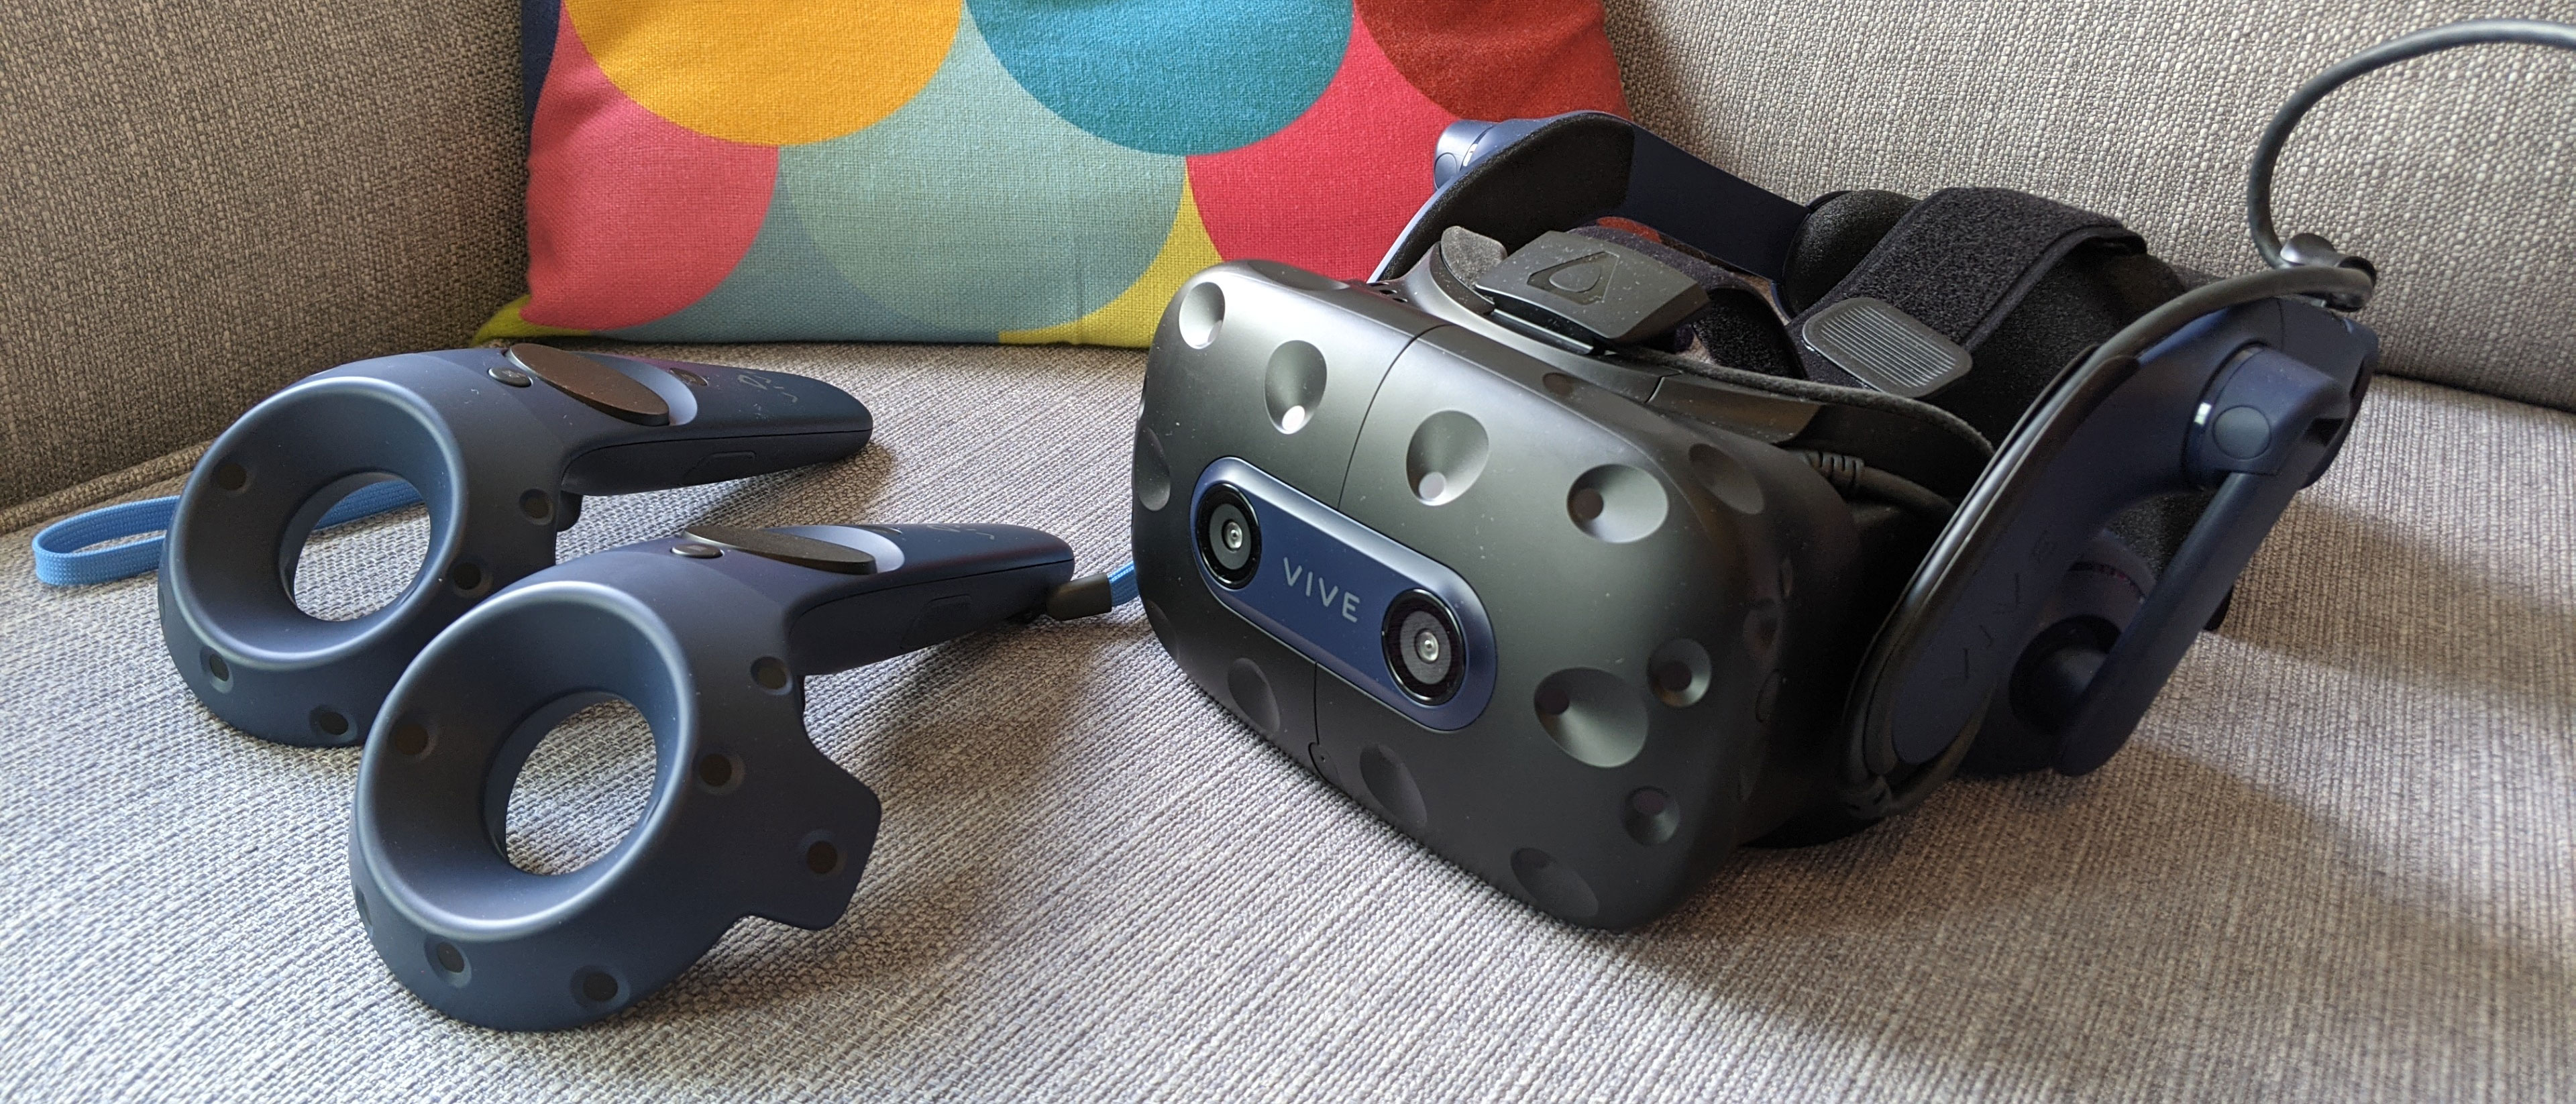 OB HTC VIVE Pro 2 Full Kit Virtual Reality System - 4896 x 2448